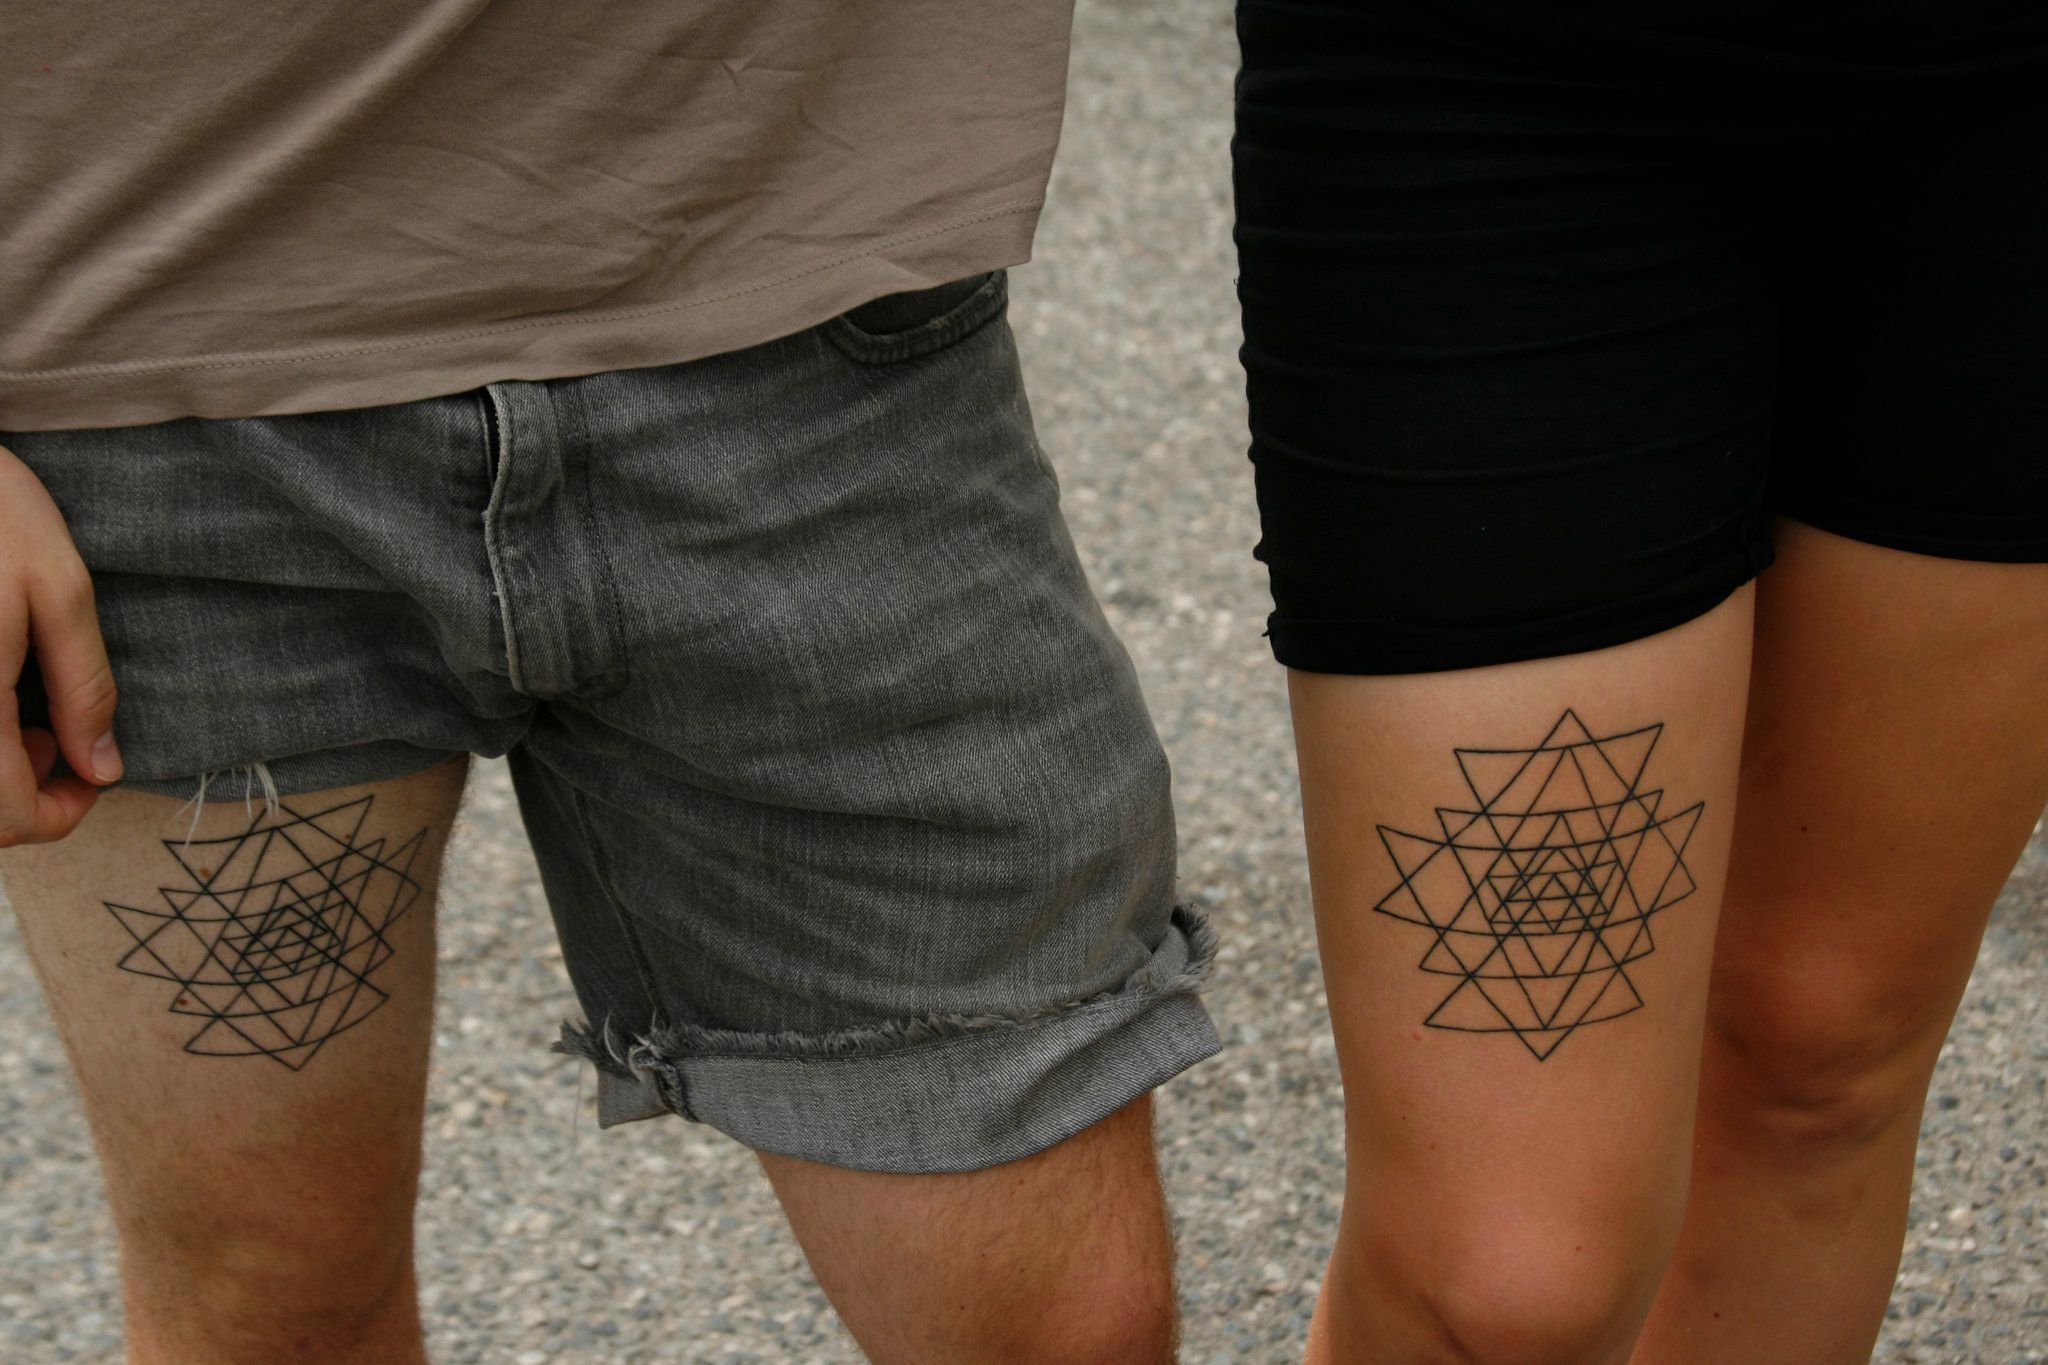 Geometric Abstract Couple Tattoo by koraykaragozler on DeviantArt